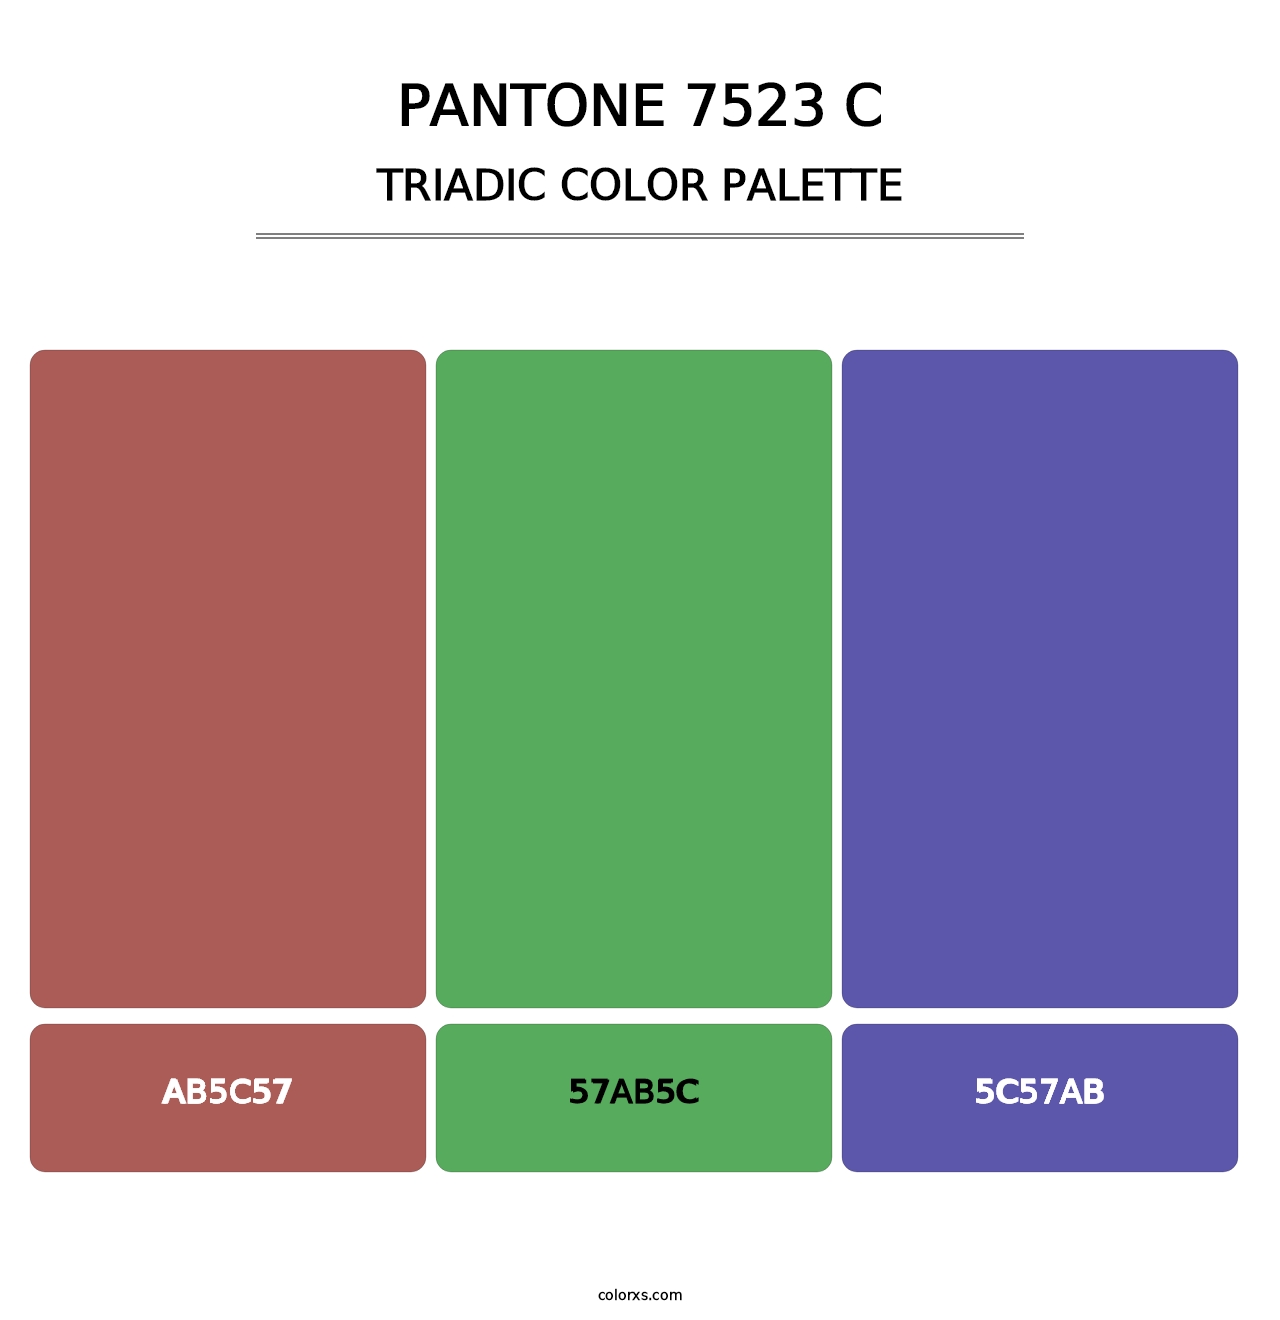 PANTONE 7523 C - Triadic Color Palette